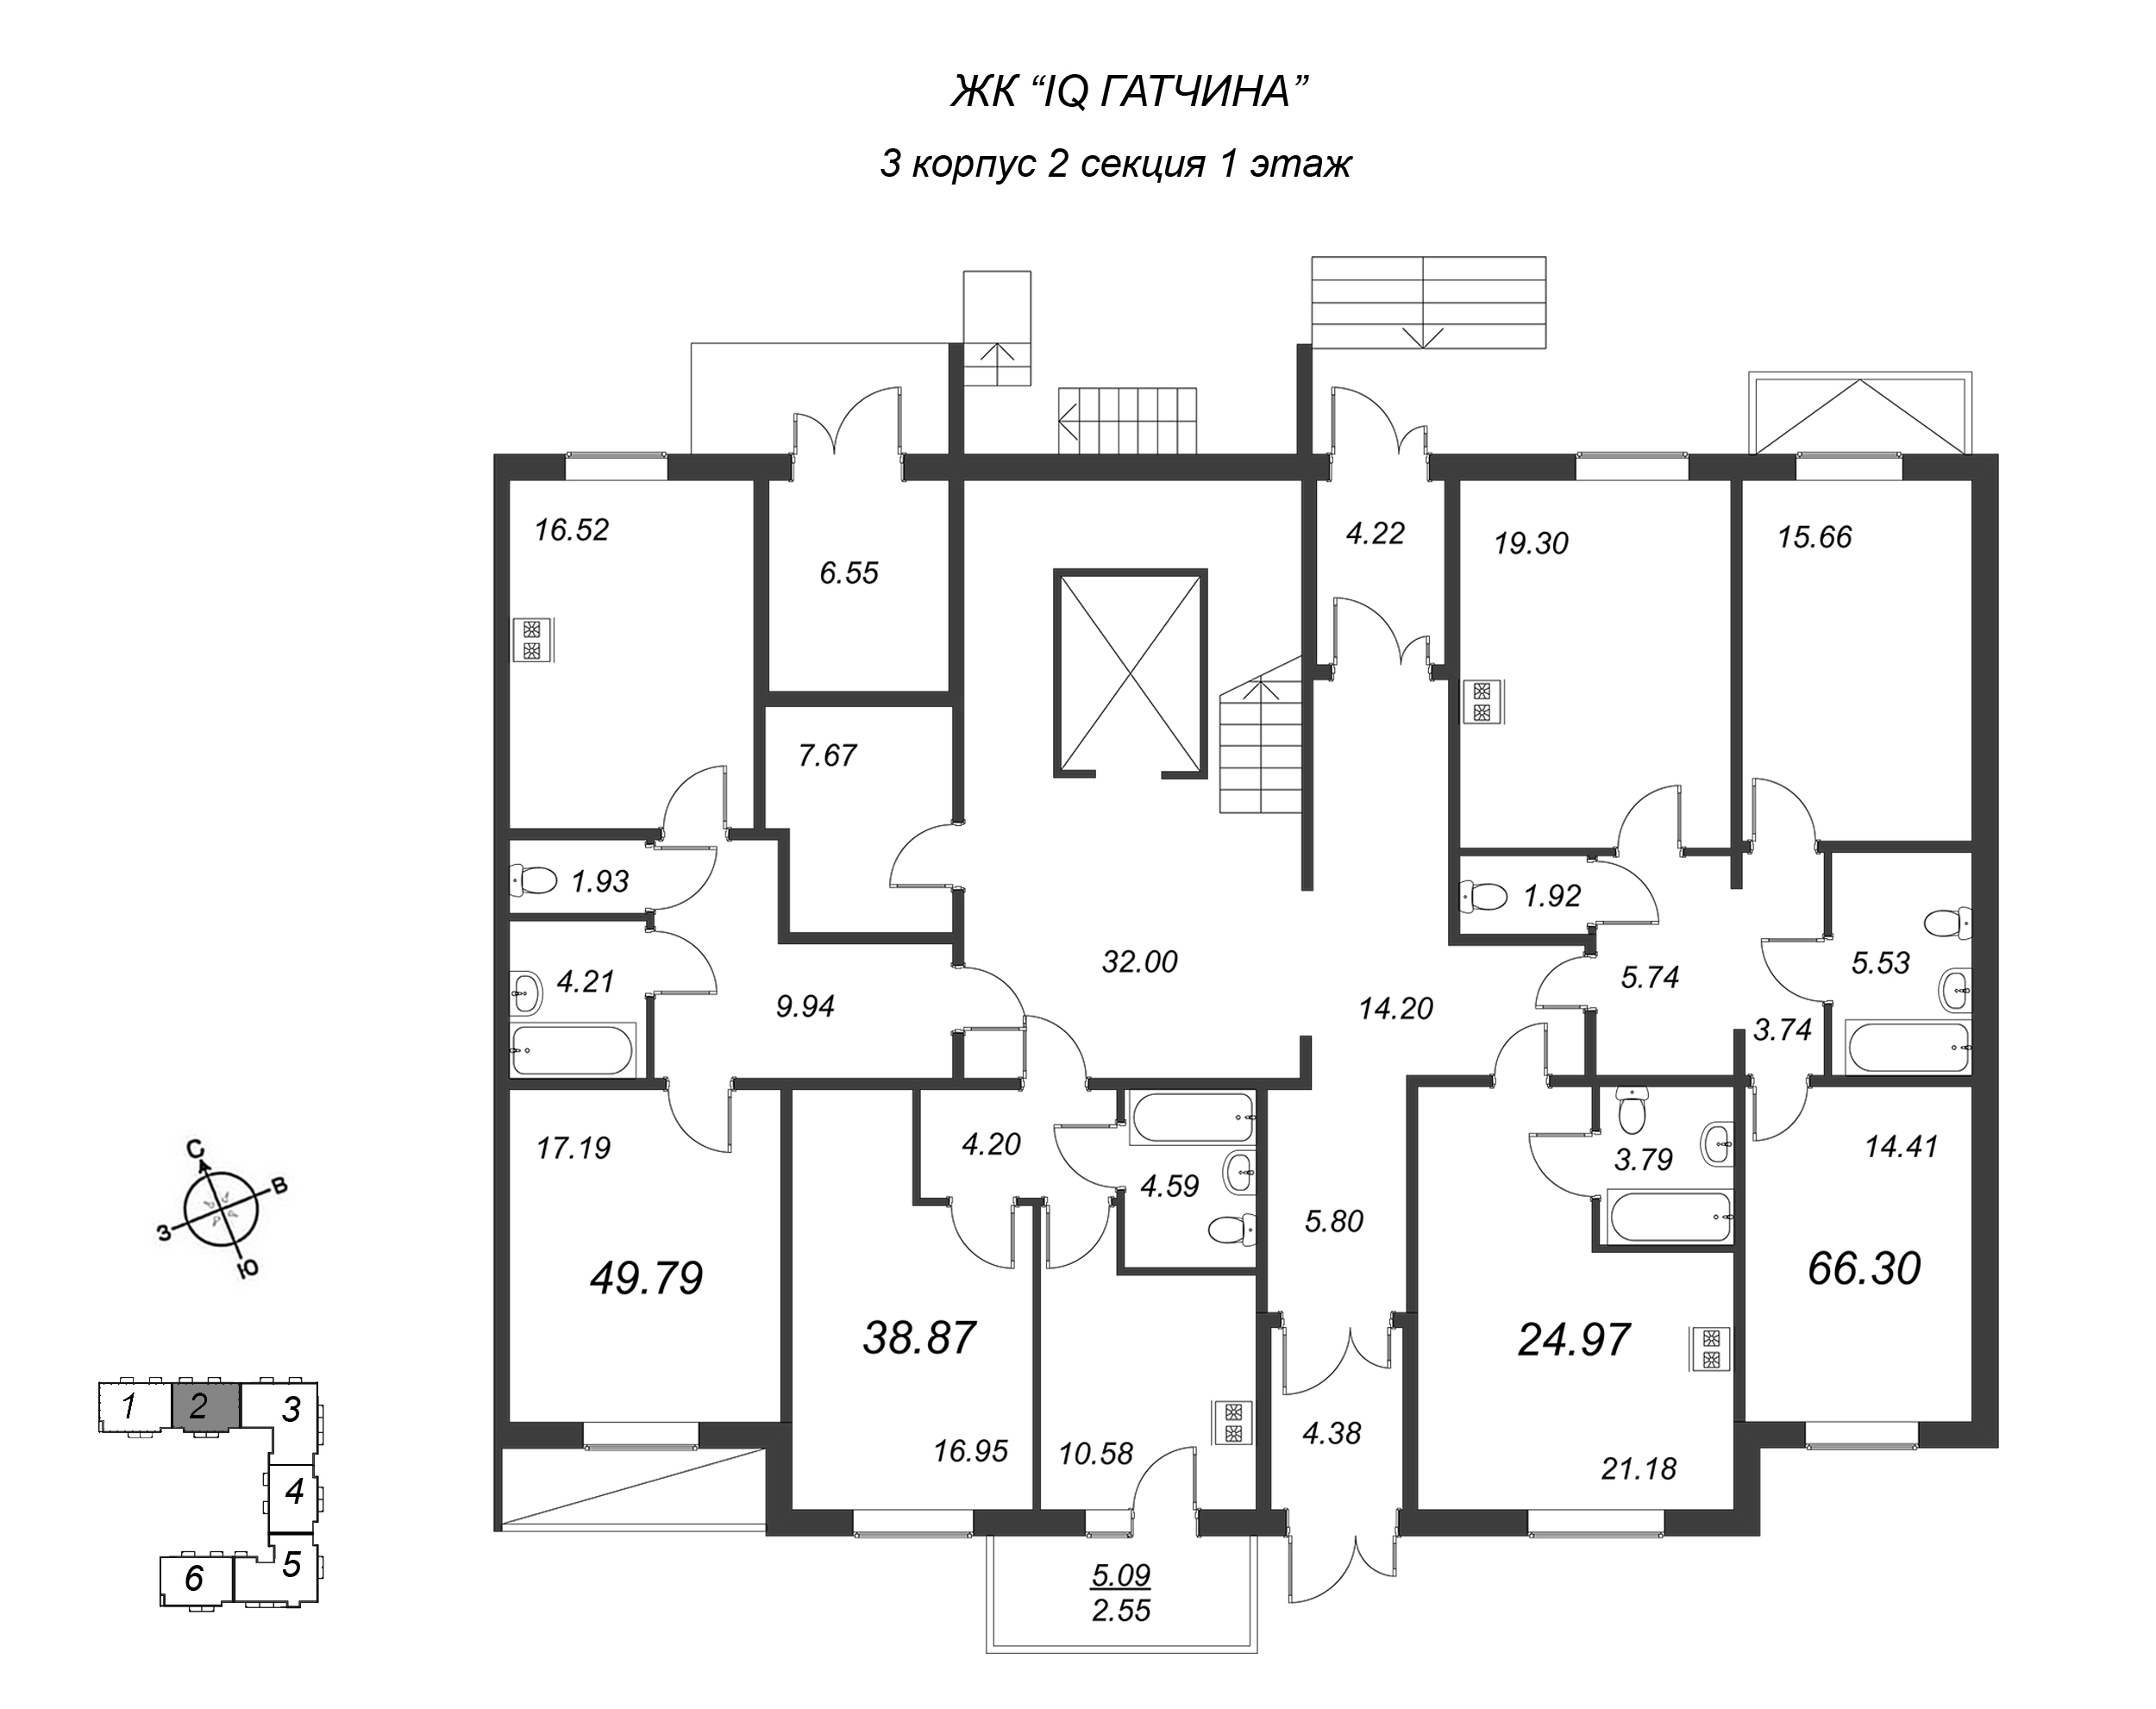 1-комнатная квартира, 38.87 м² в ЖК "IQ Гатчина" - планировка этажа